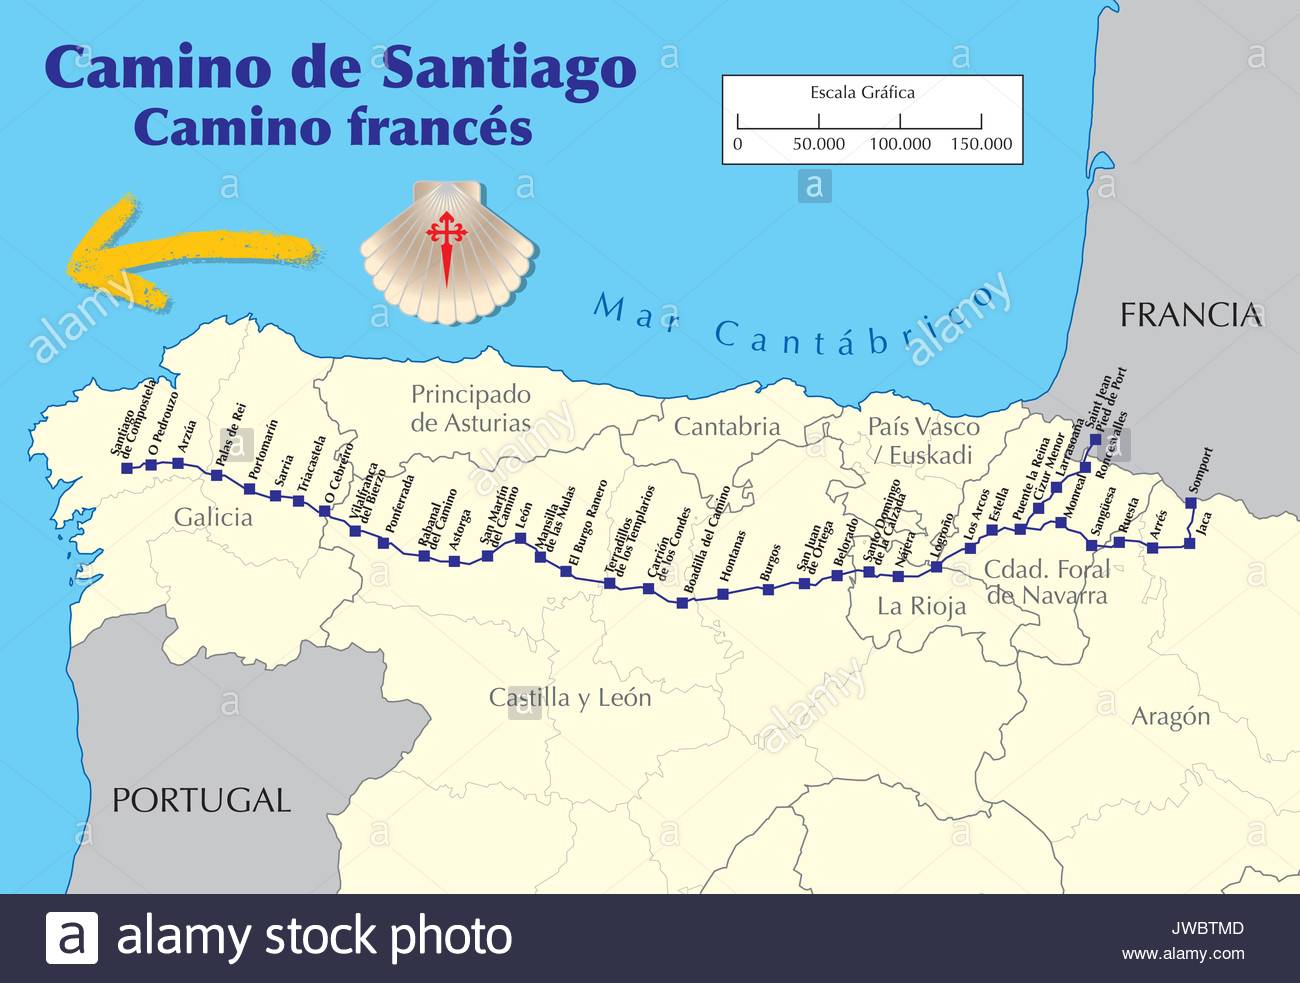 Karte Von Camino De Santiago Karte Von Saint James Weg Mit Allen Stufen Der Franzosische Weg Camino Frances Vector Illustration Stock Vektorgrafik Alamy